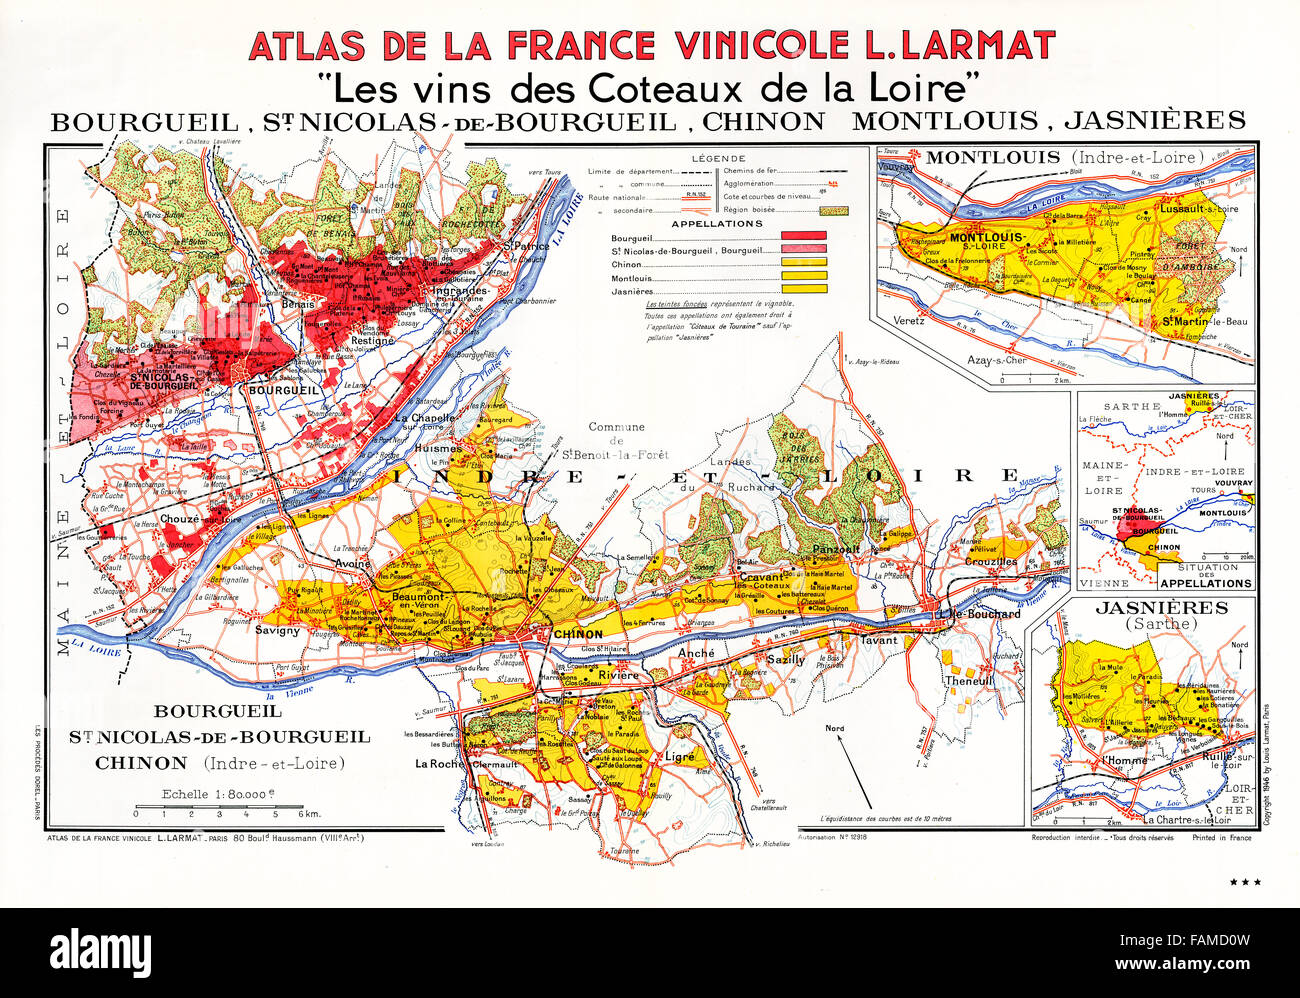 Les Vignobles de Touraine, Atlas des vins de la vallée de la Loire montrant les vignobles, villages et villes du centre de la région le long de la rivière Banque D'Images